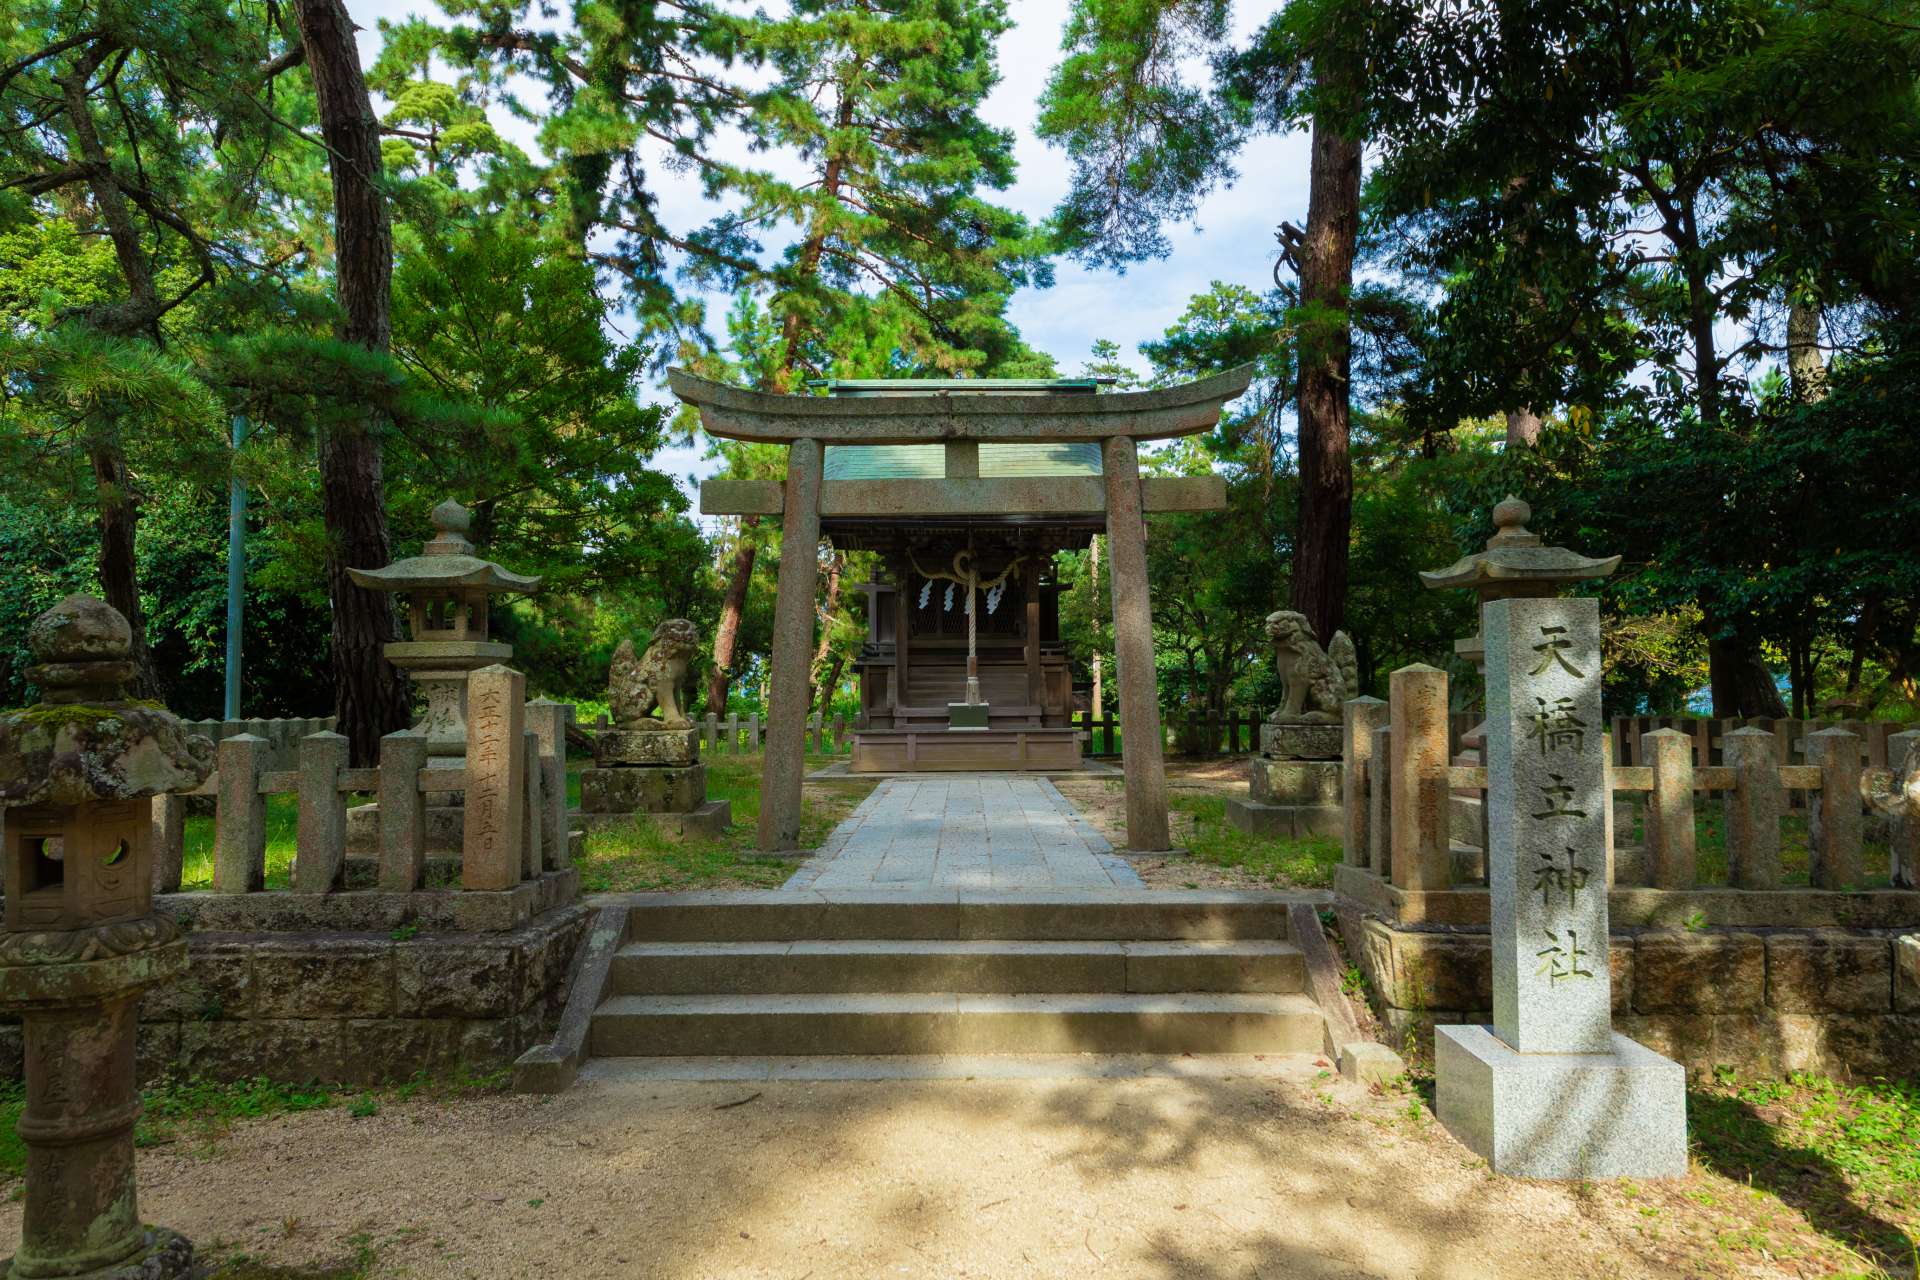 天橋立の中ほどにある天橋立神社は恋愛成就の地として人気。